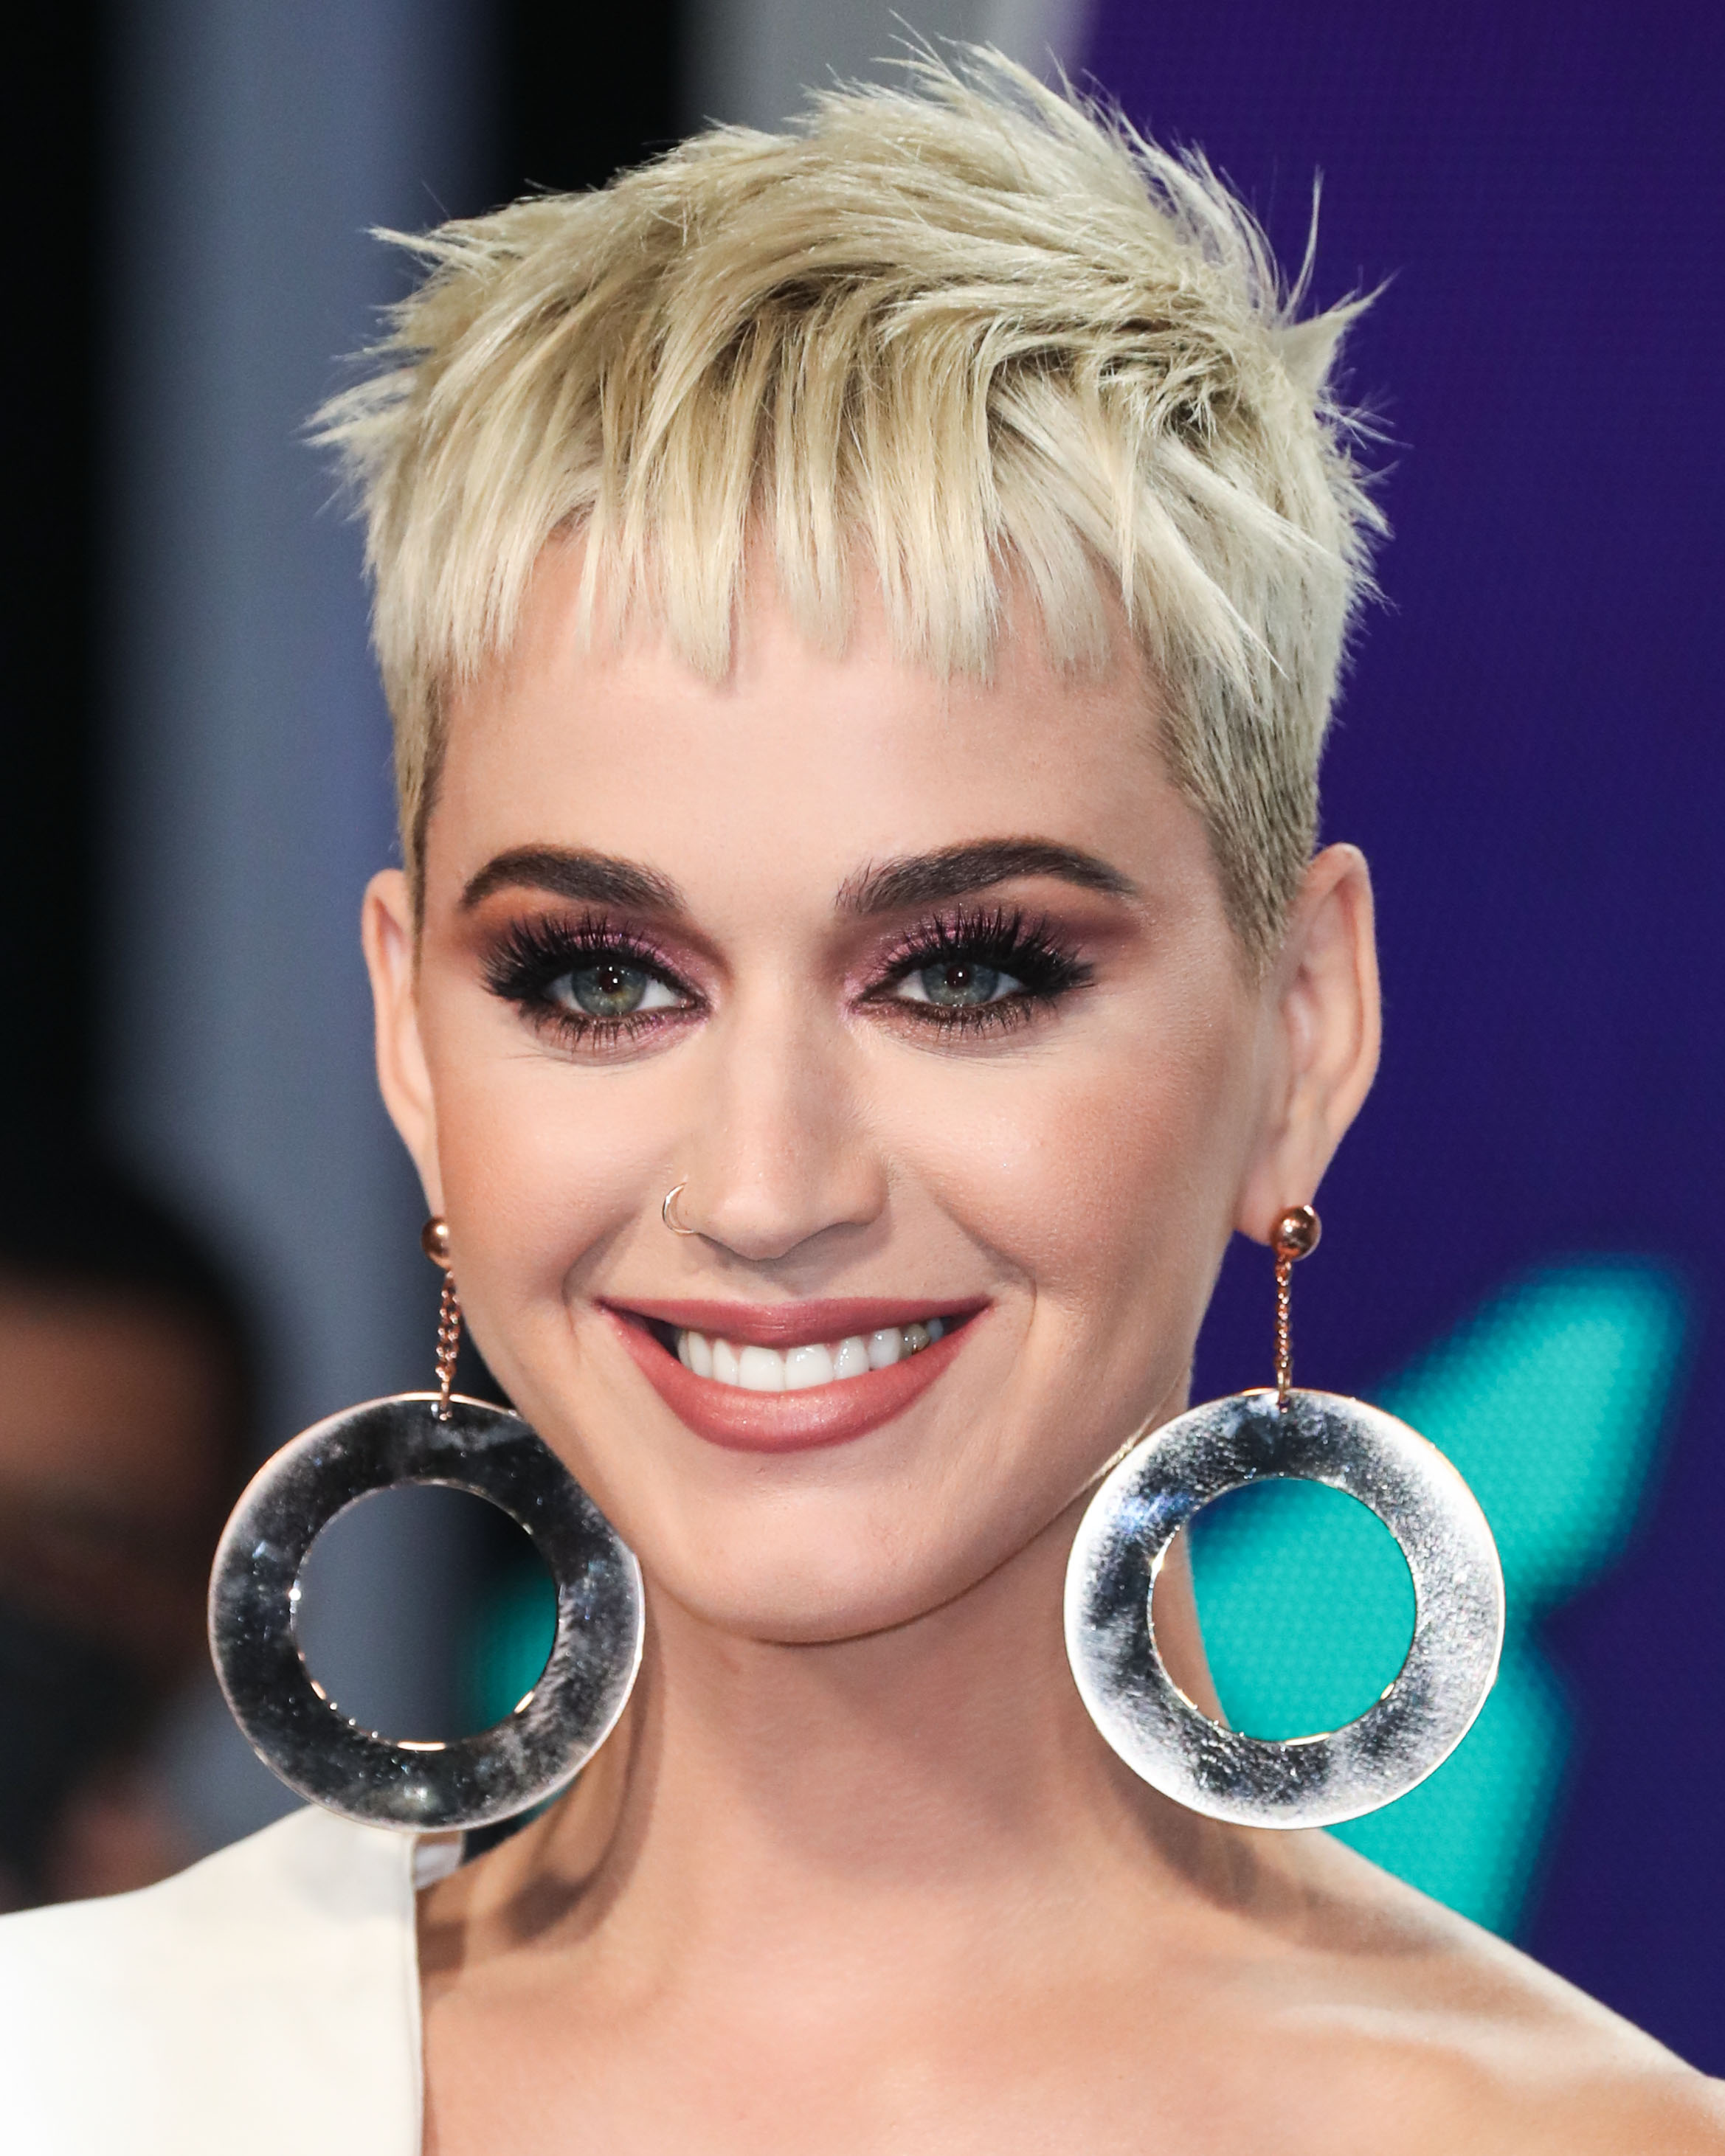 Η Katy Perry άλλαξε τα μαλλιά της και είναι ένας άλλος άνθρωπος!